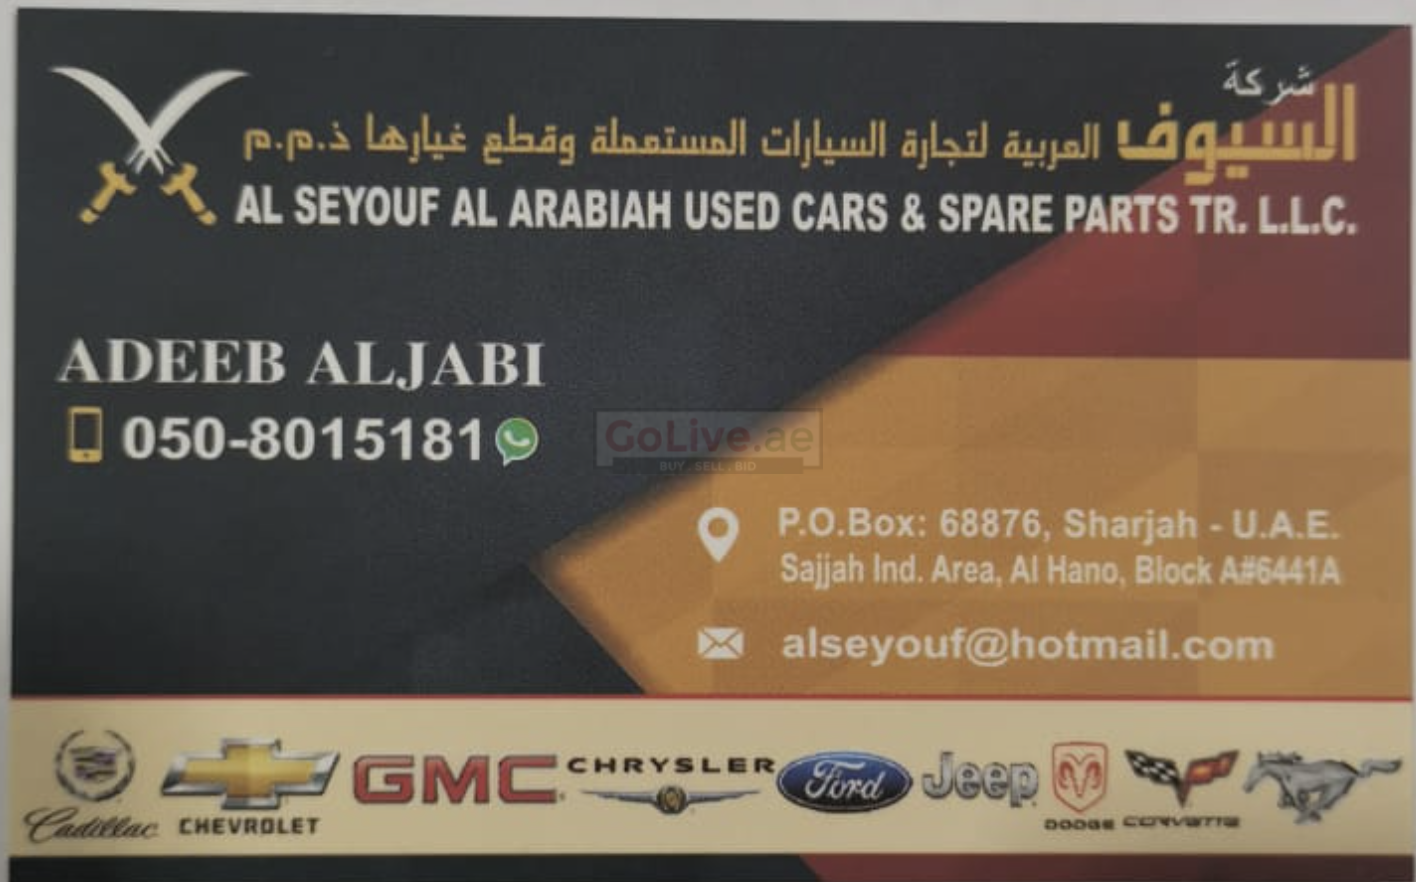 Al Seyouf Al Arabiah Used Car and Spare Parts TR LLC